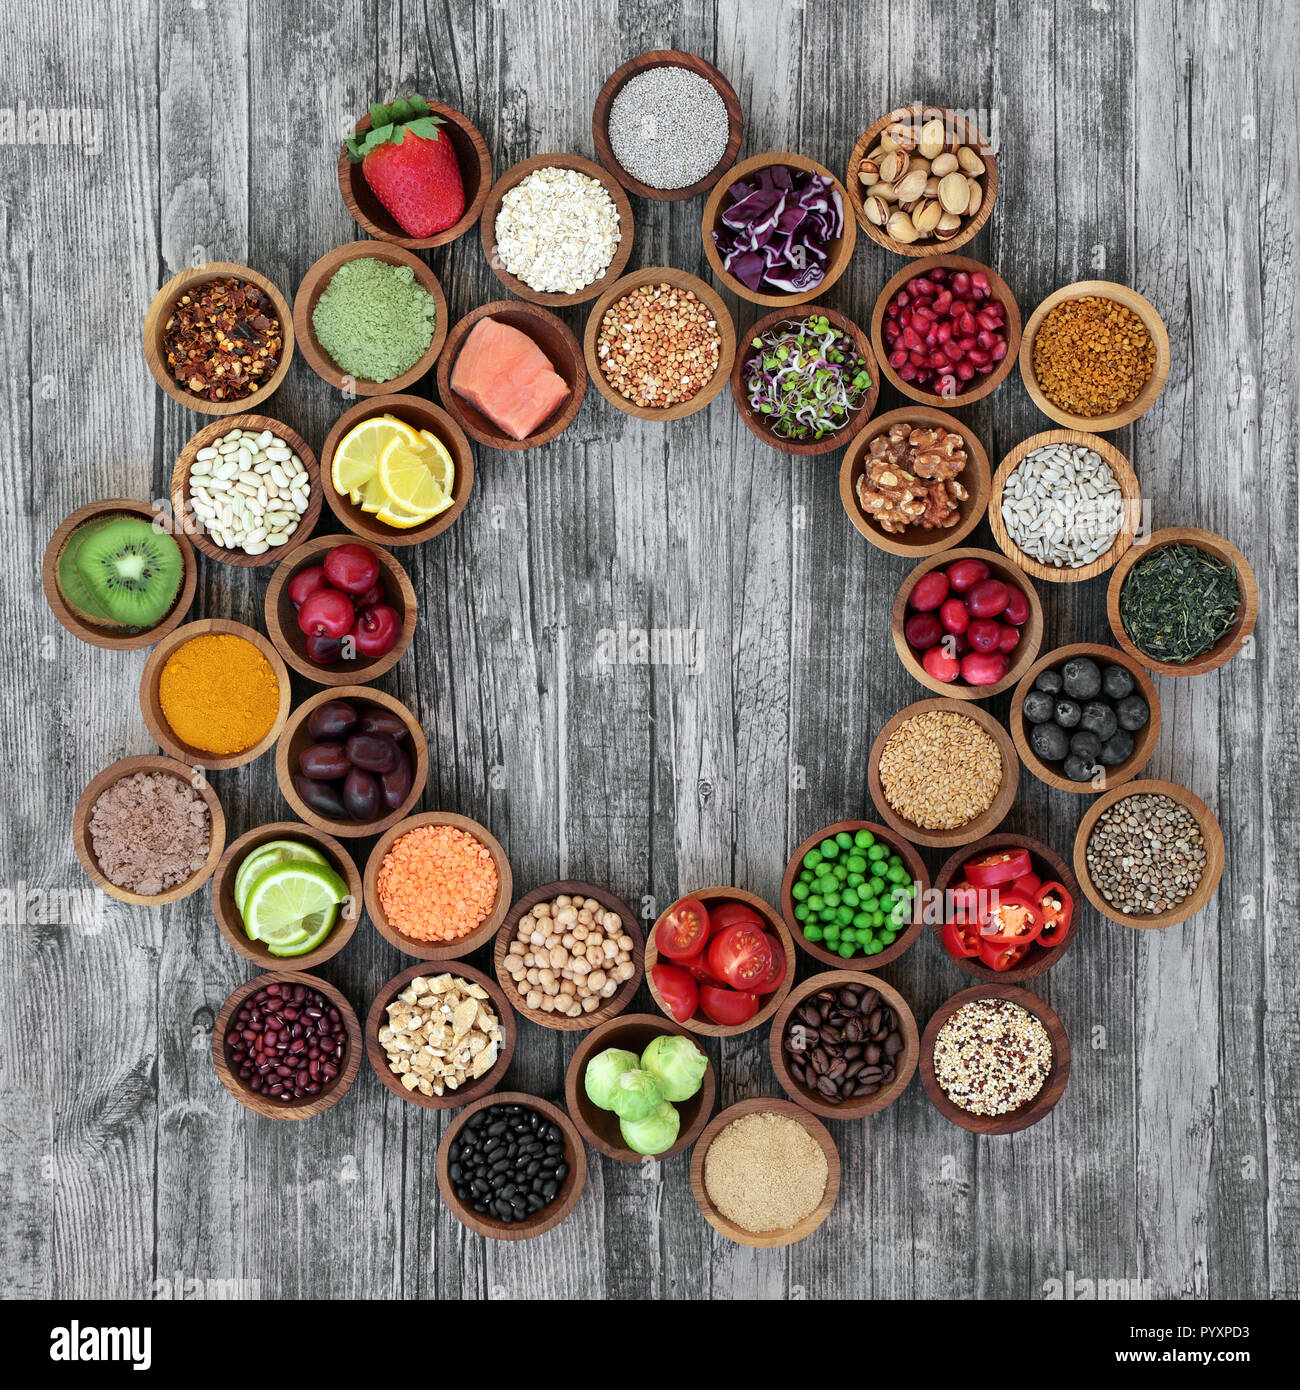 Gesundheit Nahrung für Fitness Concept bilden ein Rad mit frischem Obst, Gemüse, Beilage Pulver, Hülsenfrüchte, Kräuter, Körner und Müsli. Super Foods Stockfoto